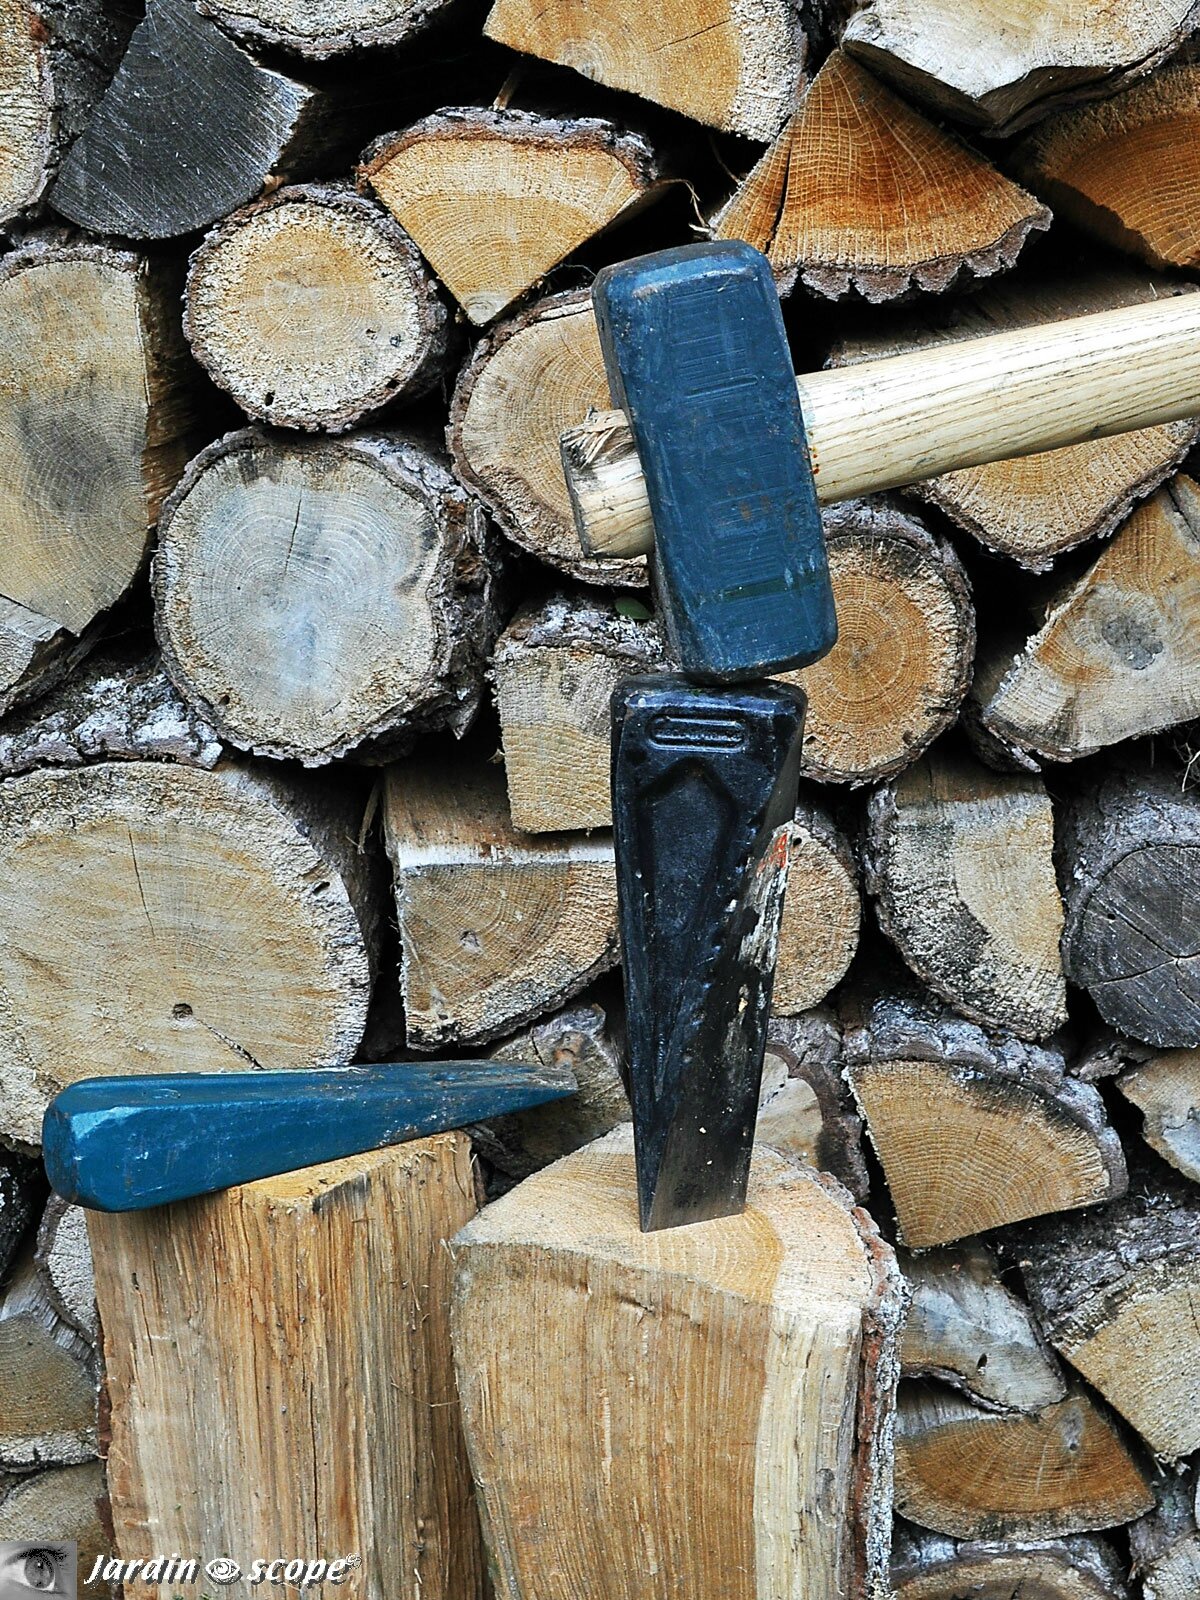 Des outils perfectionnés pour fendre le bois - Le JardinOscope